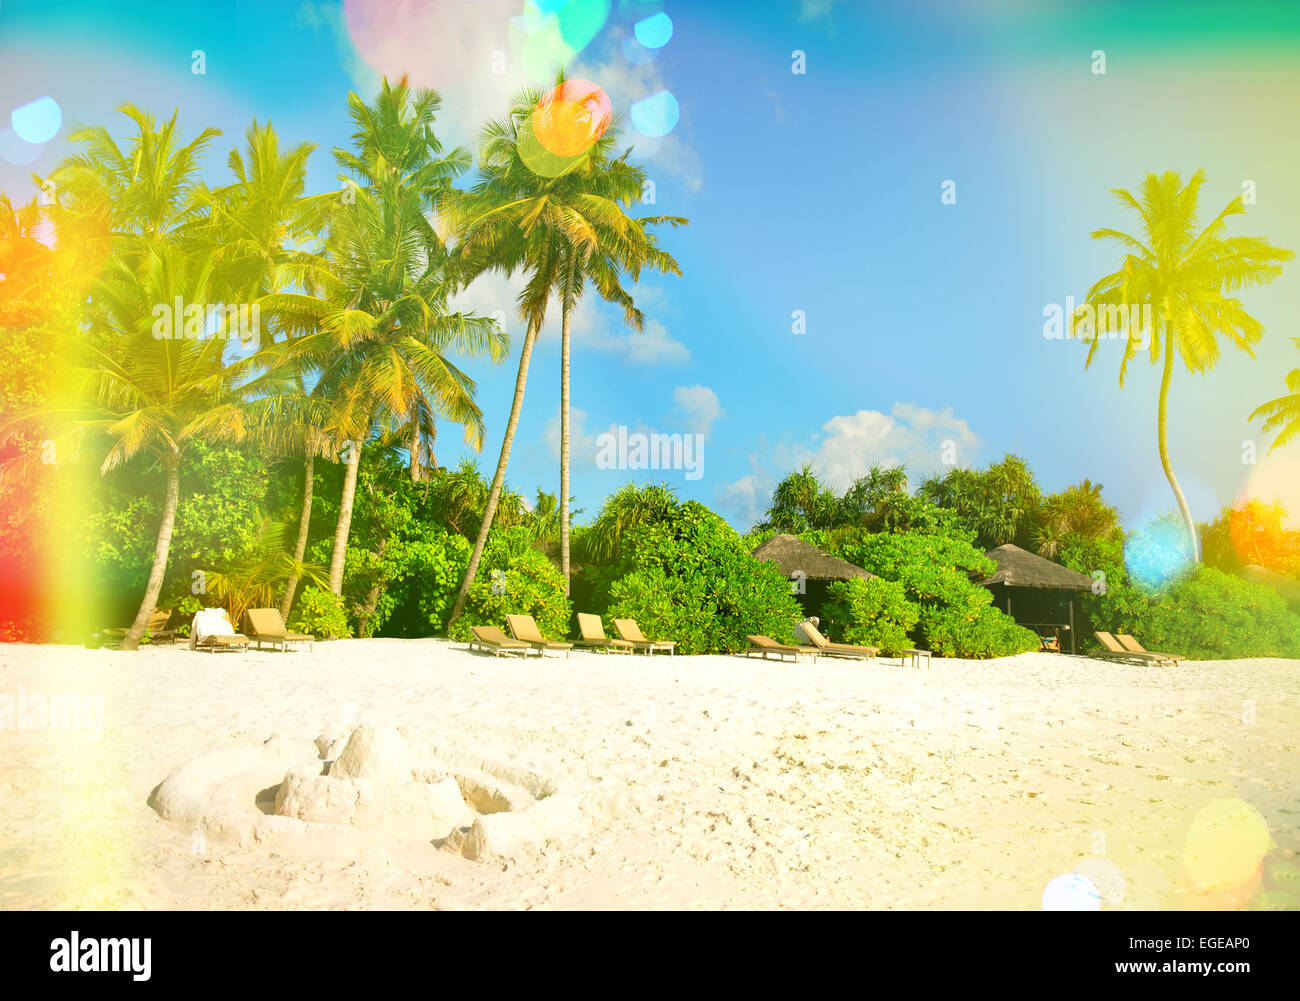 La plage de sable tropicale avec palmiers et ciel bleu ensoleillé. Tons style vintage photo avec la lumière des torches et des fuites Banque D'Images